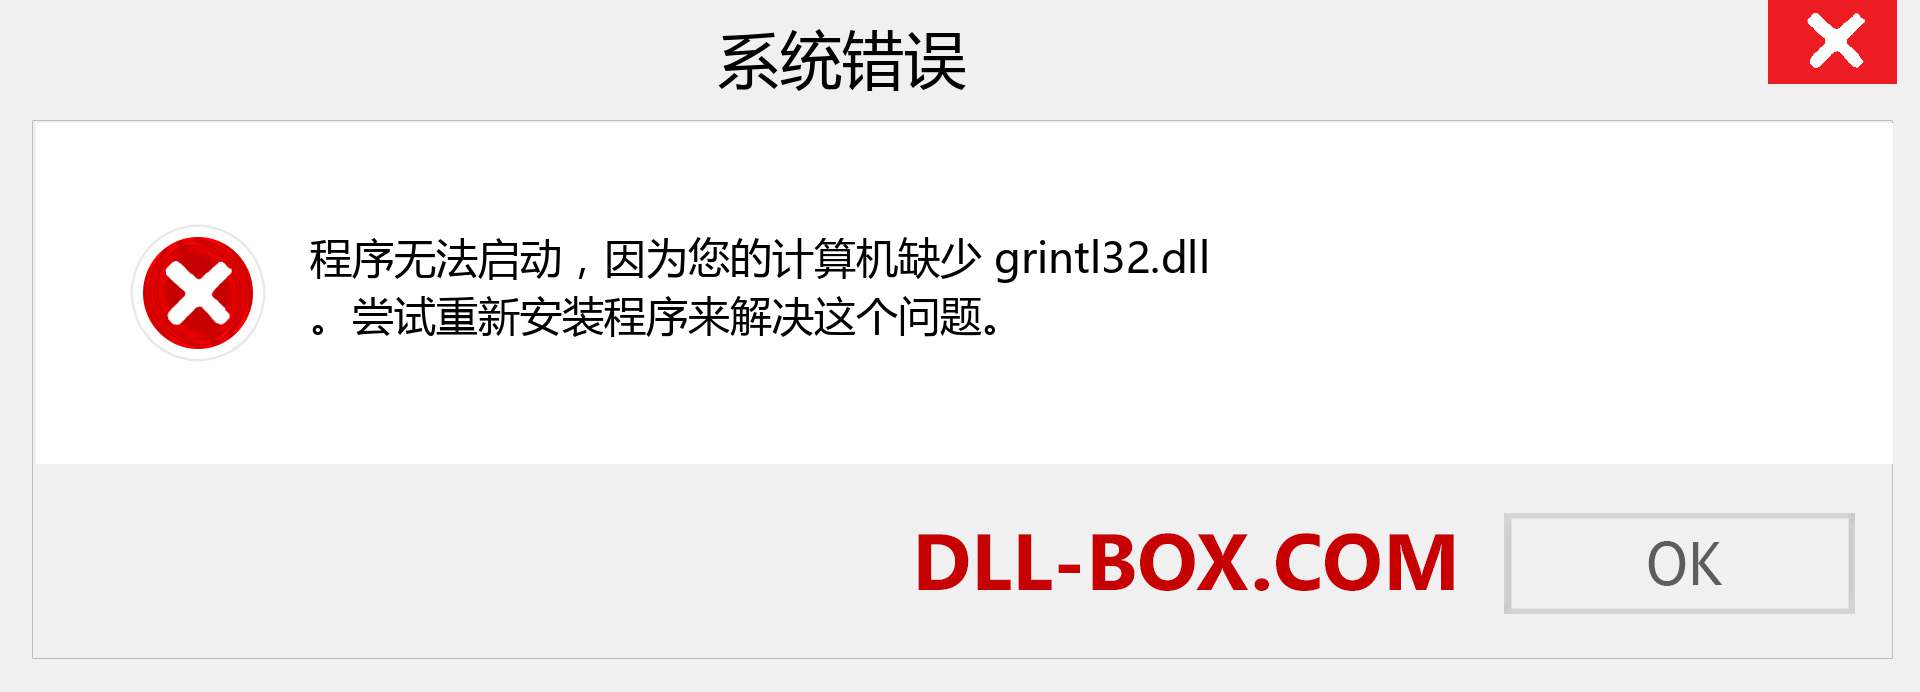 grintl32.dll 文件丢失？。 适用于 Windows 7、8、10 的下载 - 修复 Windows、照片、图像上的 grintl32 dll 丢失错误